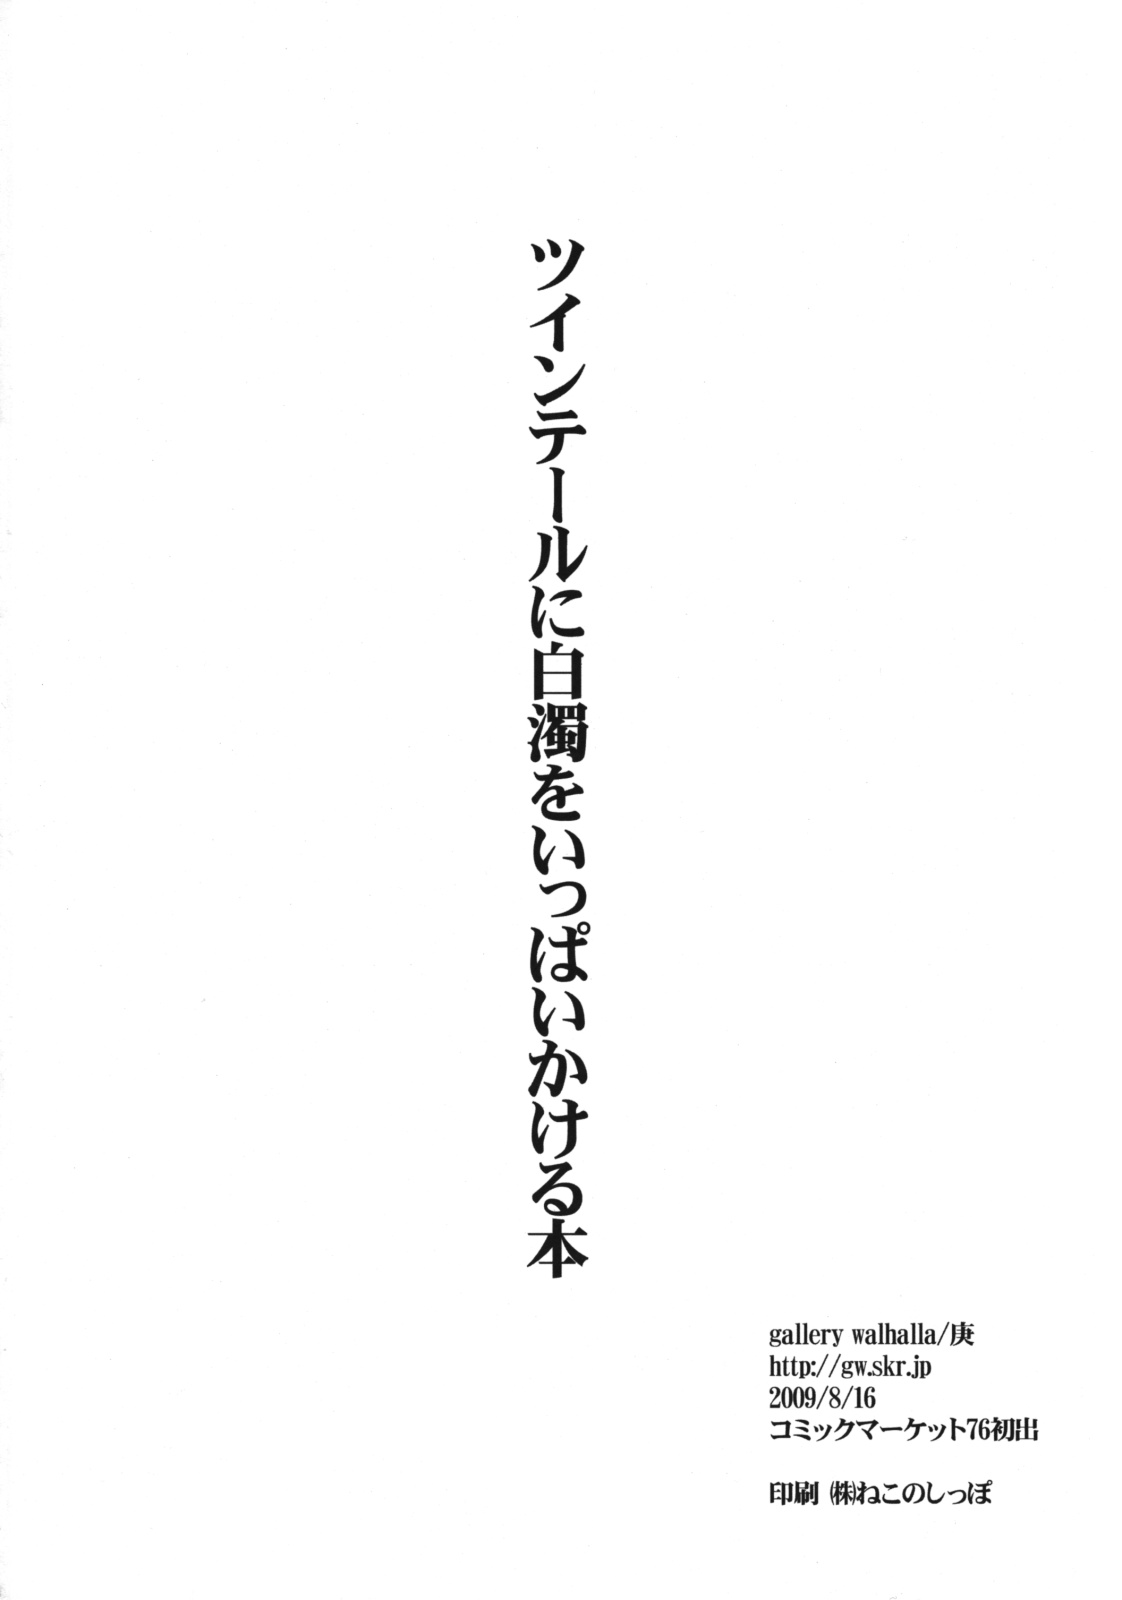 (C76) [gallery walhalla (庚)] ツインテールに白濁をいっぱいかける本